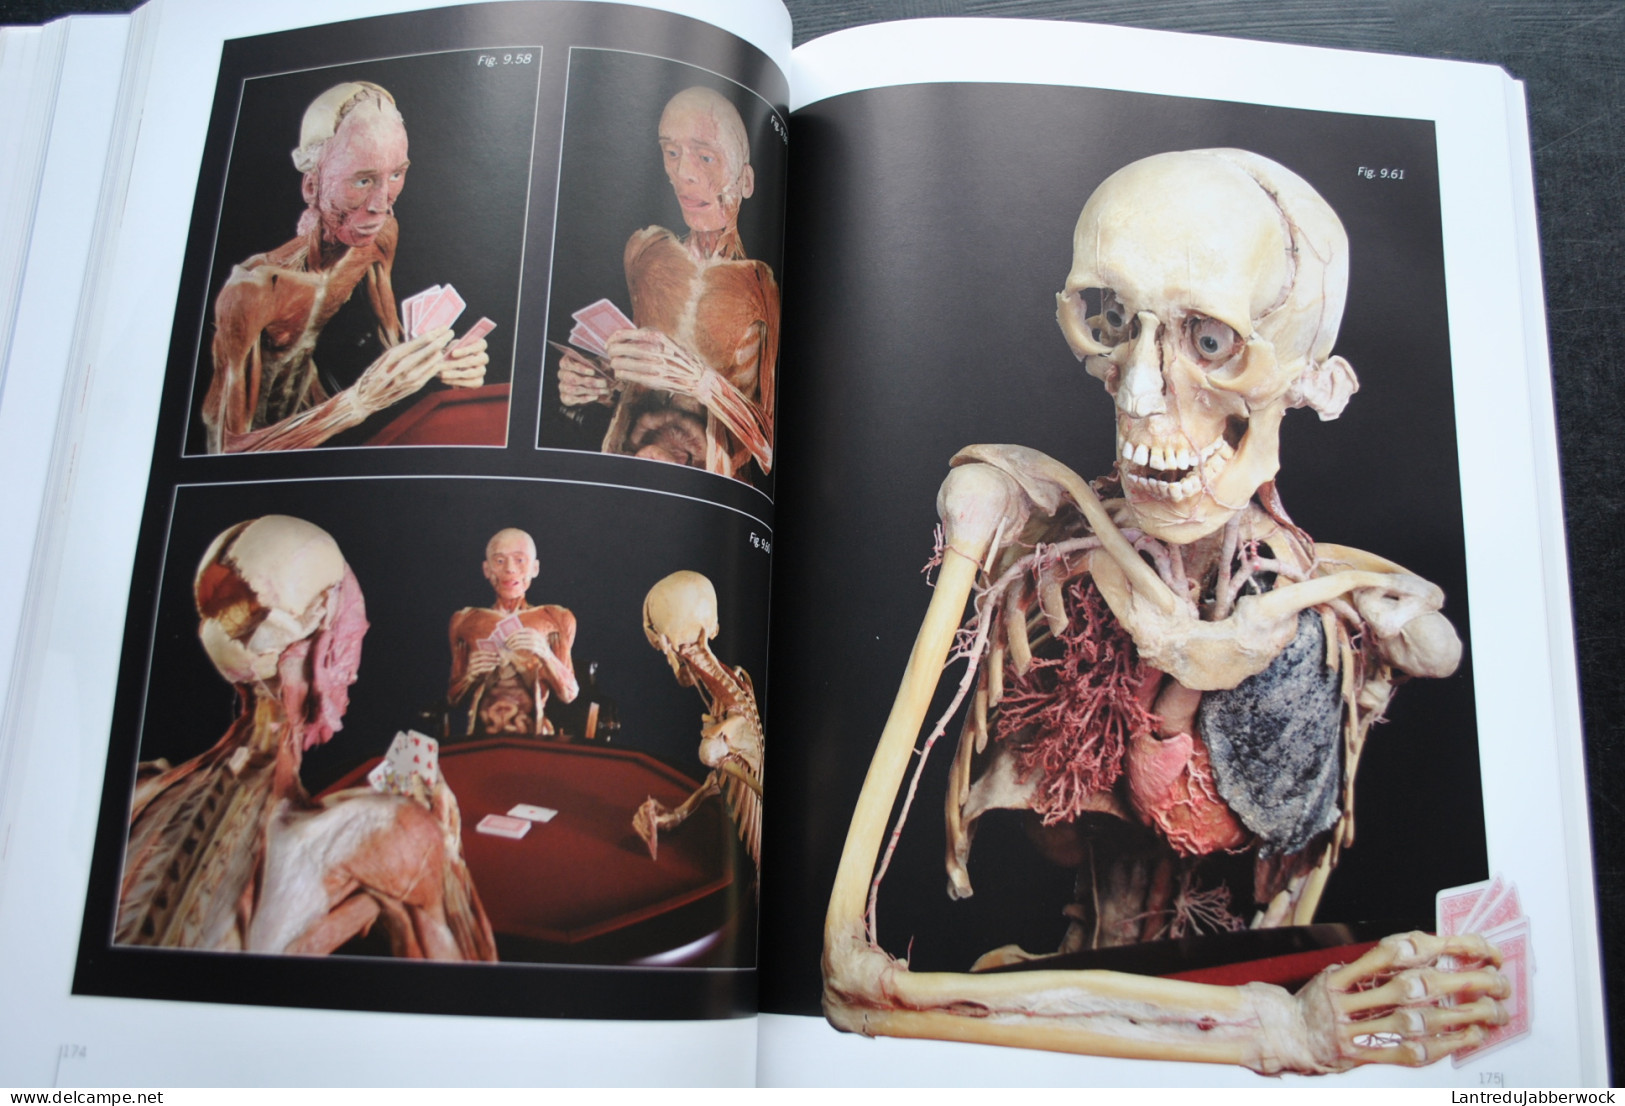 Gunther von Hagens Le monde du corps exposition anatomique de corps humains véritables - Anatomie plastination